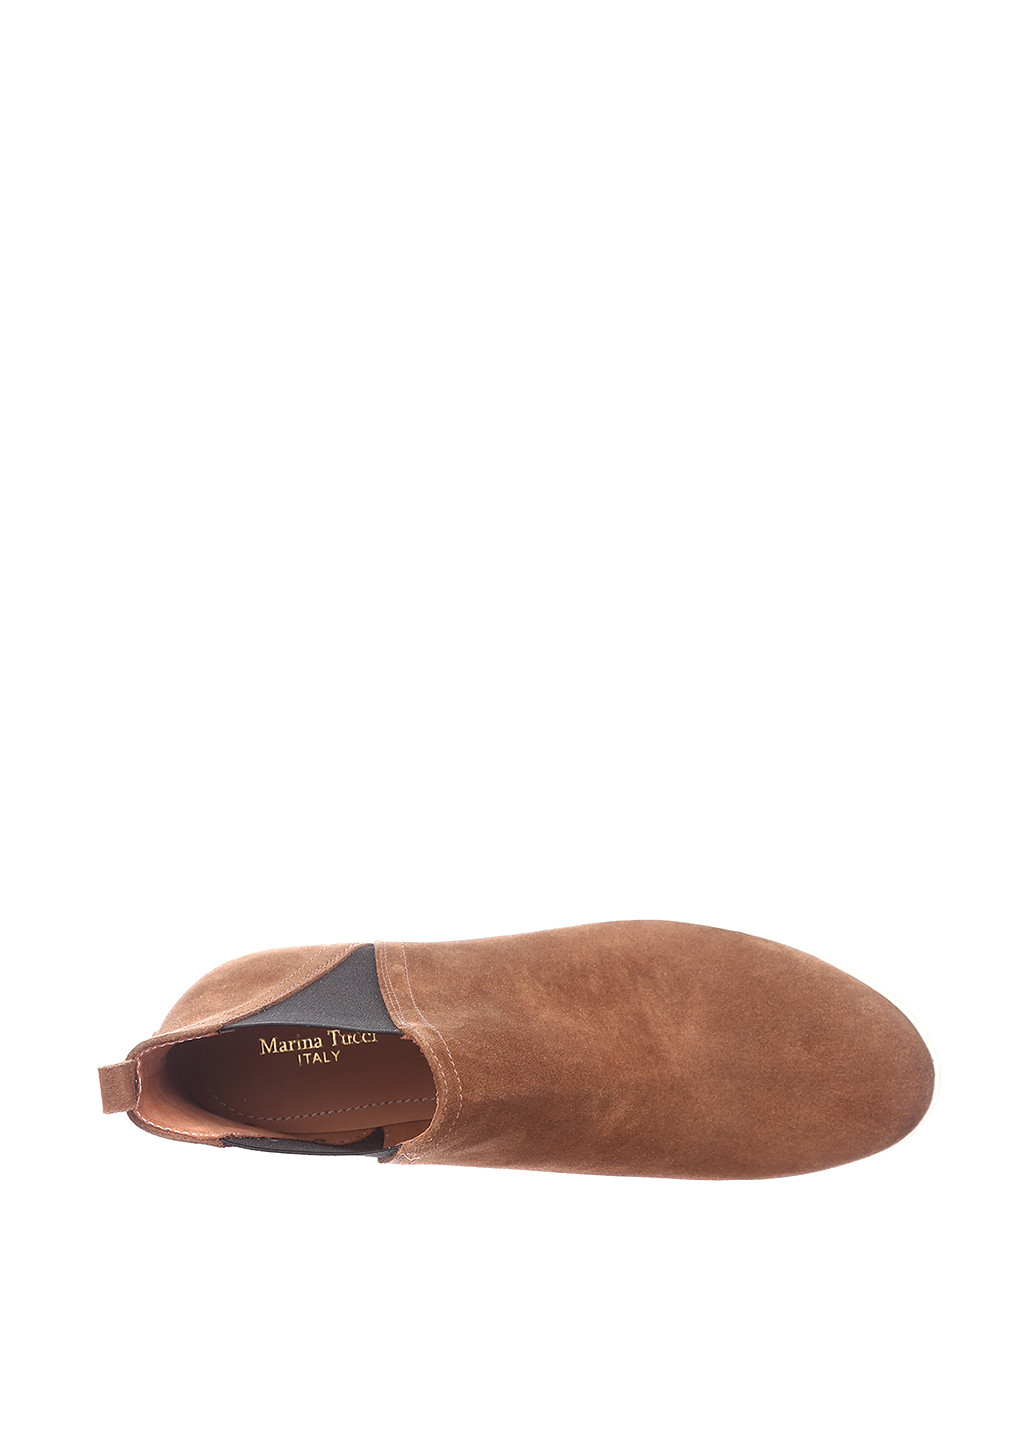 Осенние ботинки челси Maria Tucci без декора из натуральной замши